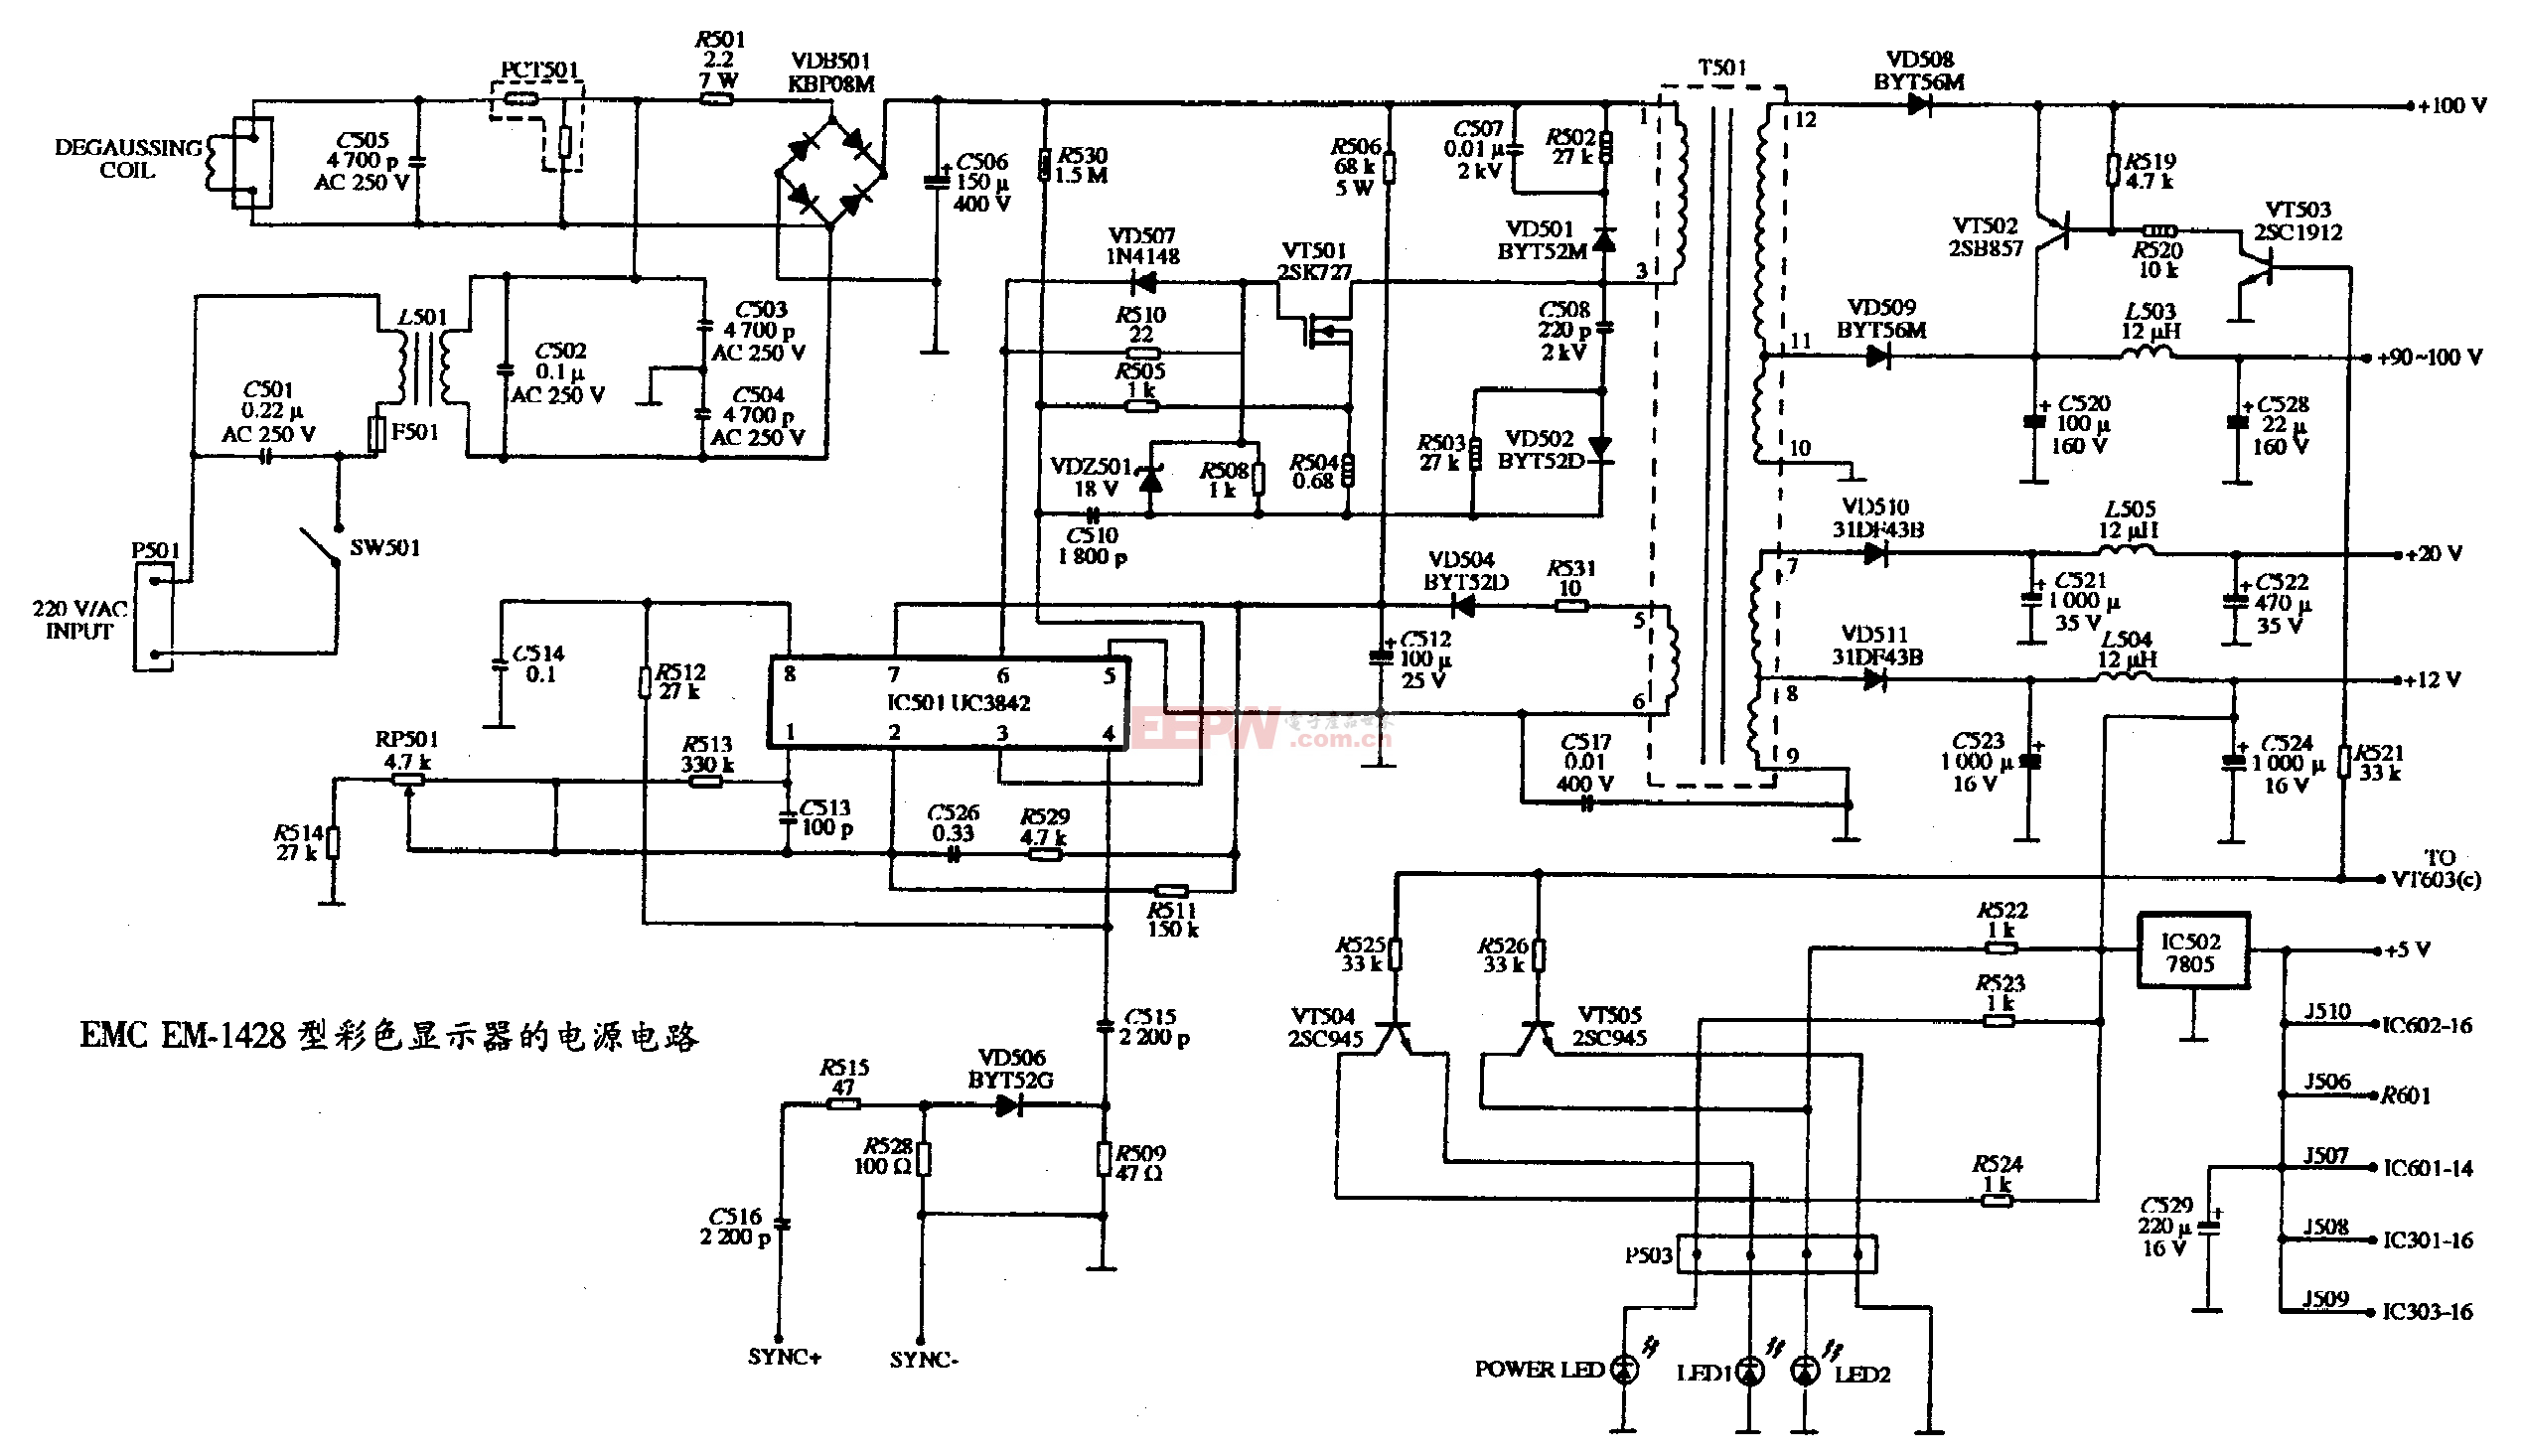 44、EMC EM-1428型彩色显示器的电源电路图